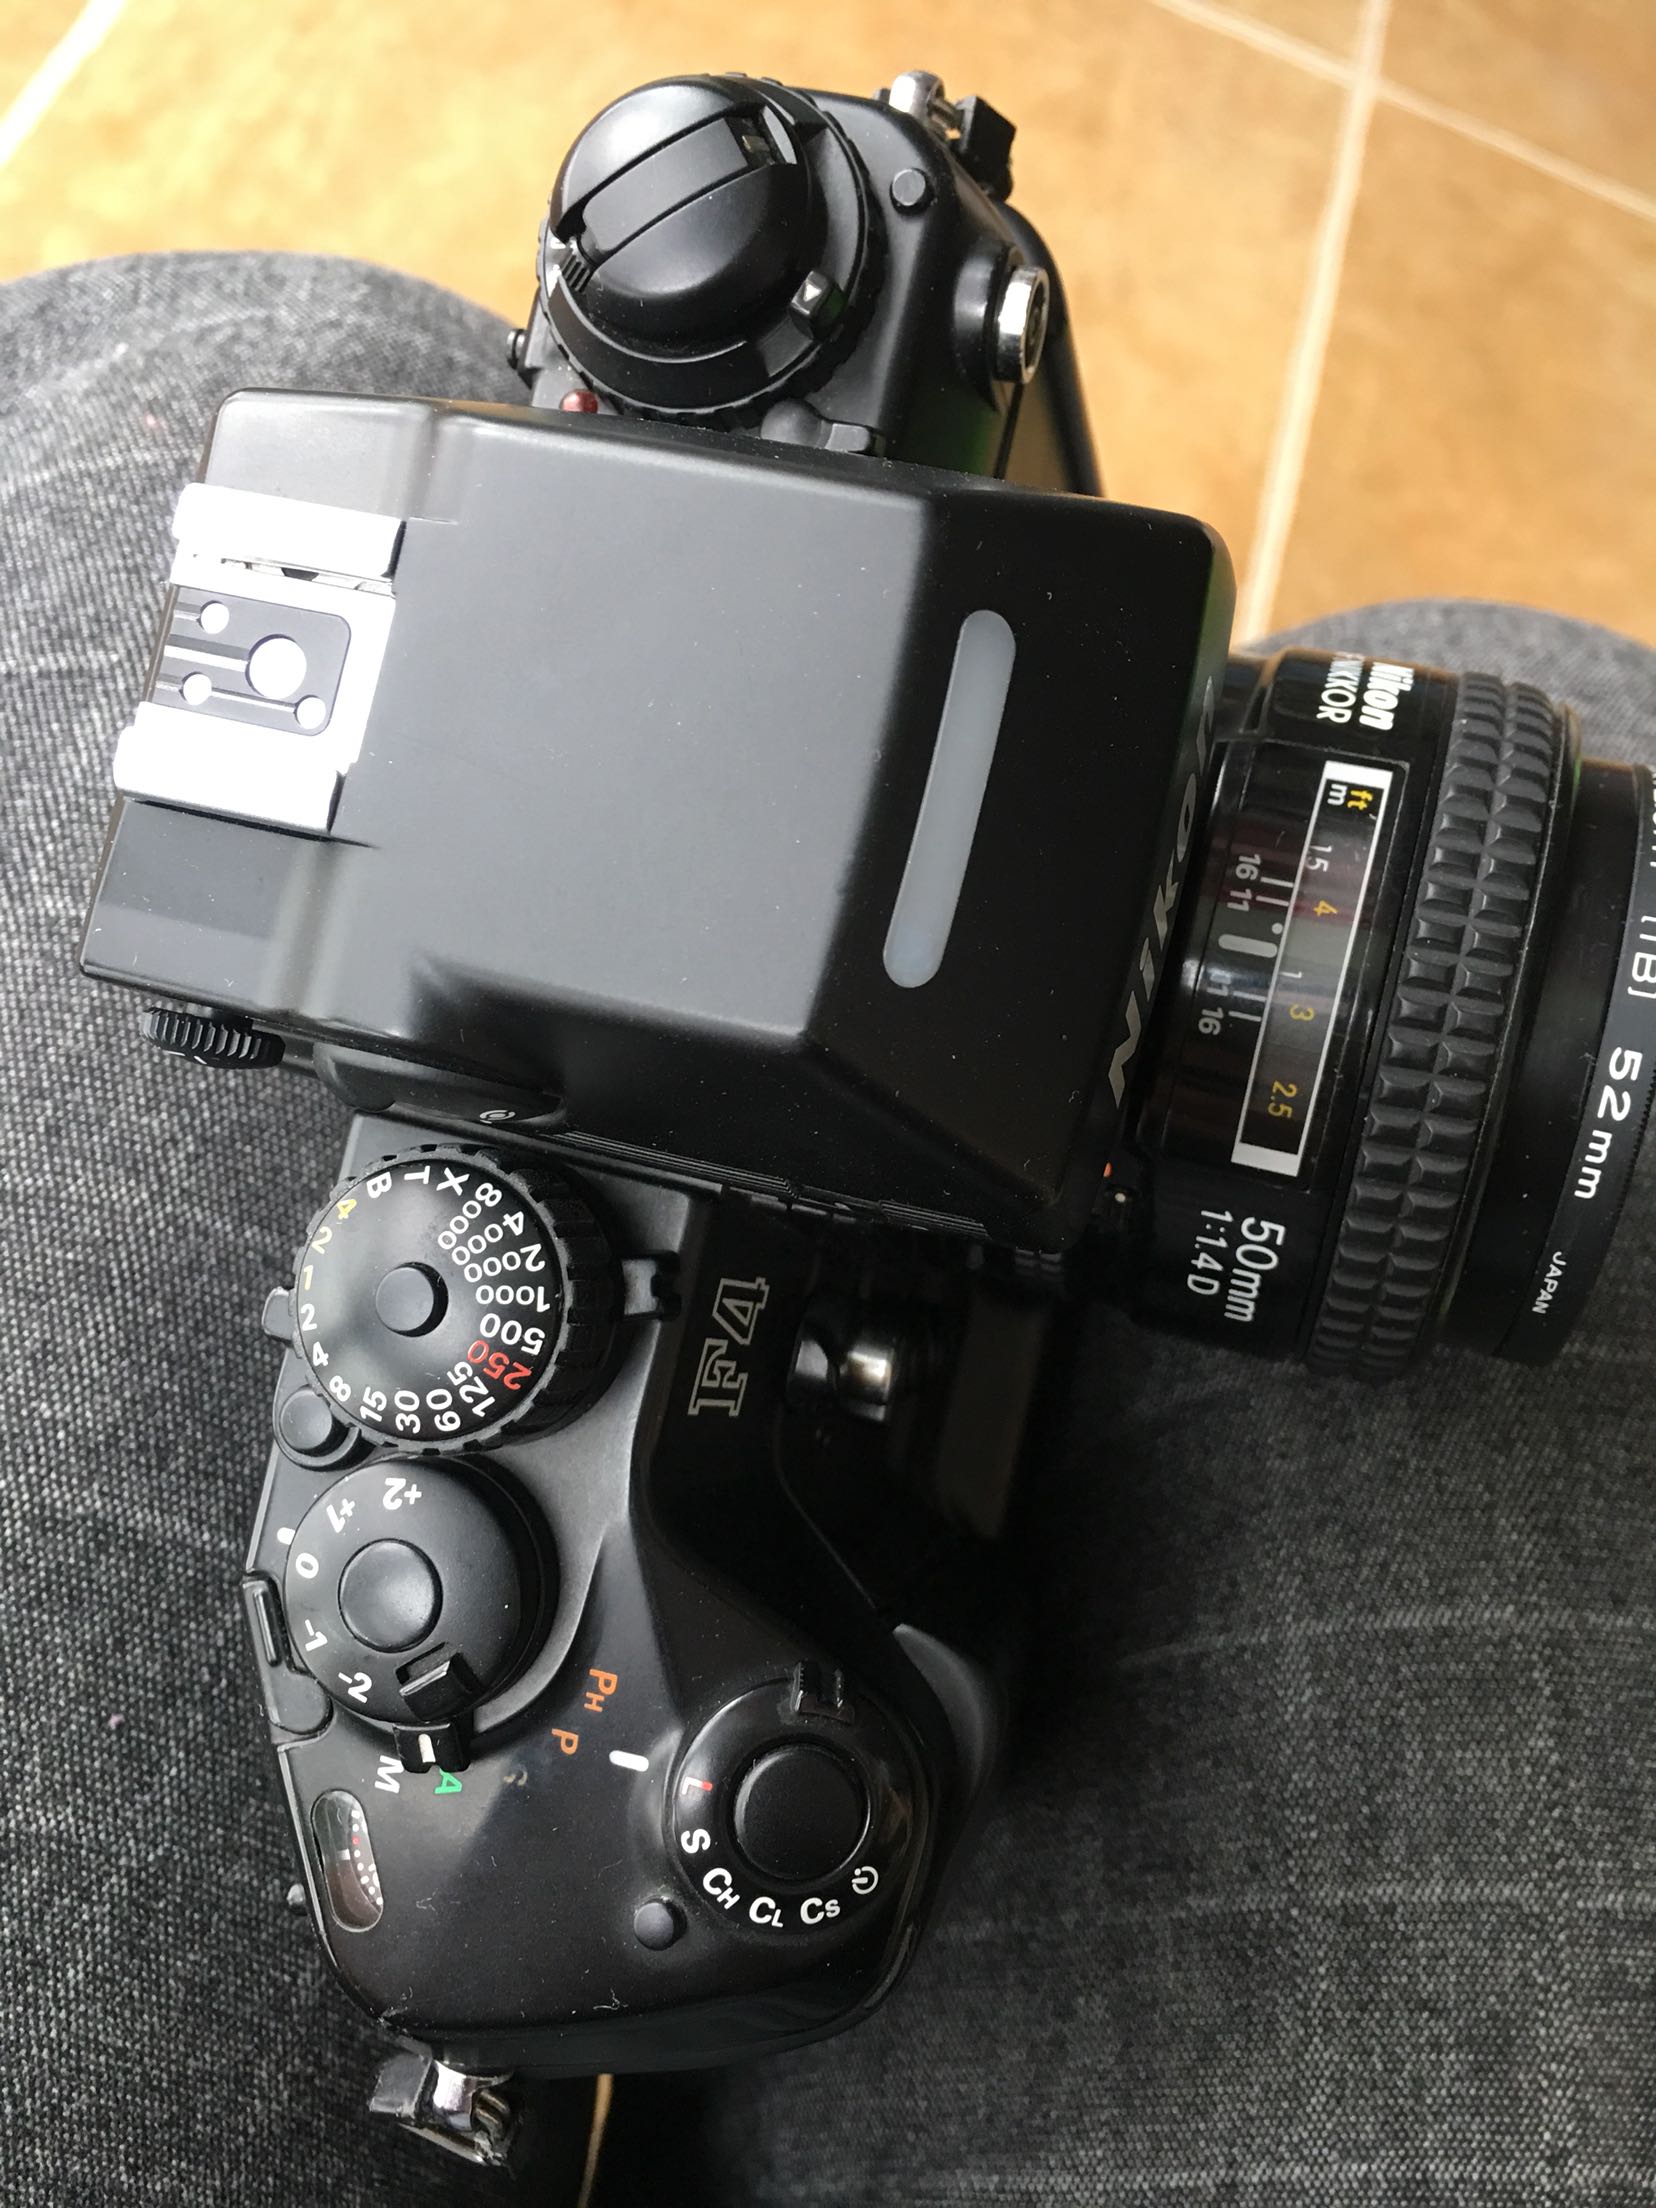 尼康 F4S  功能完好 经典自动机皇 带50 1.4D大光圈镜头